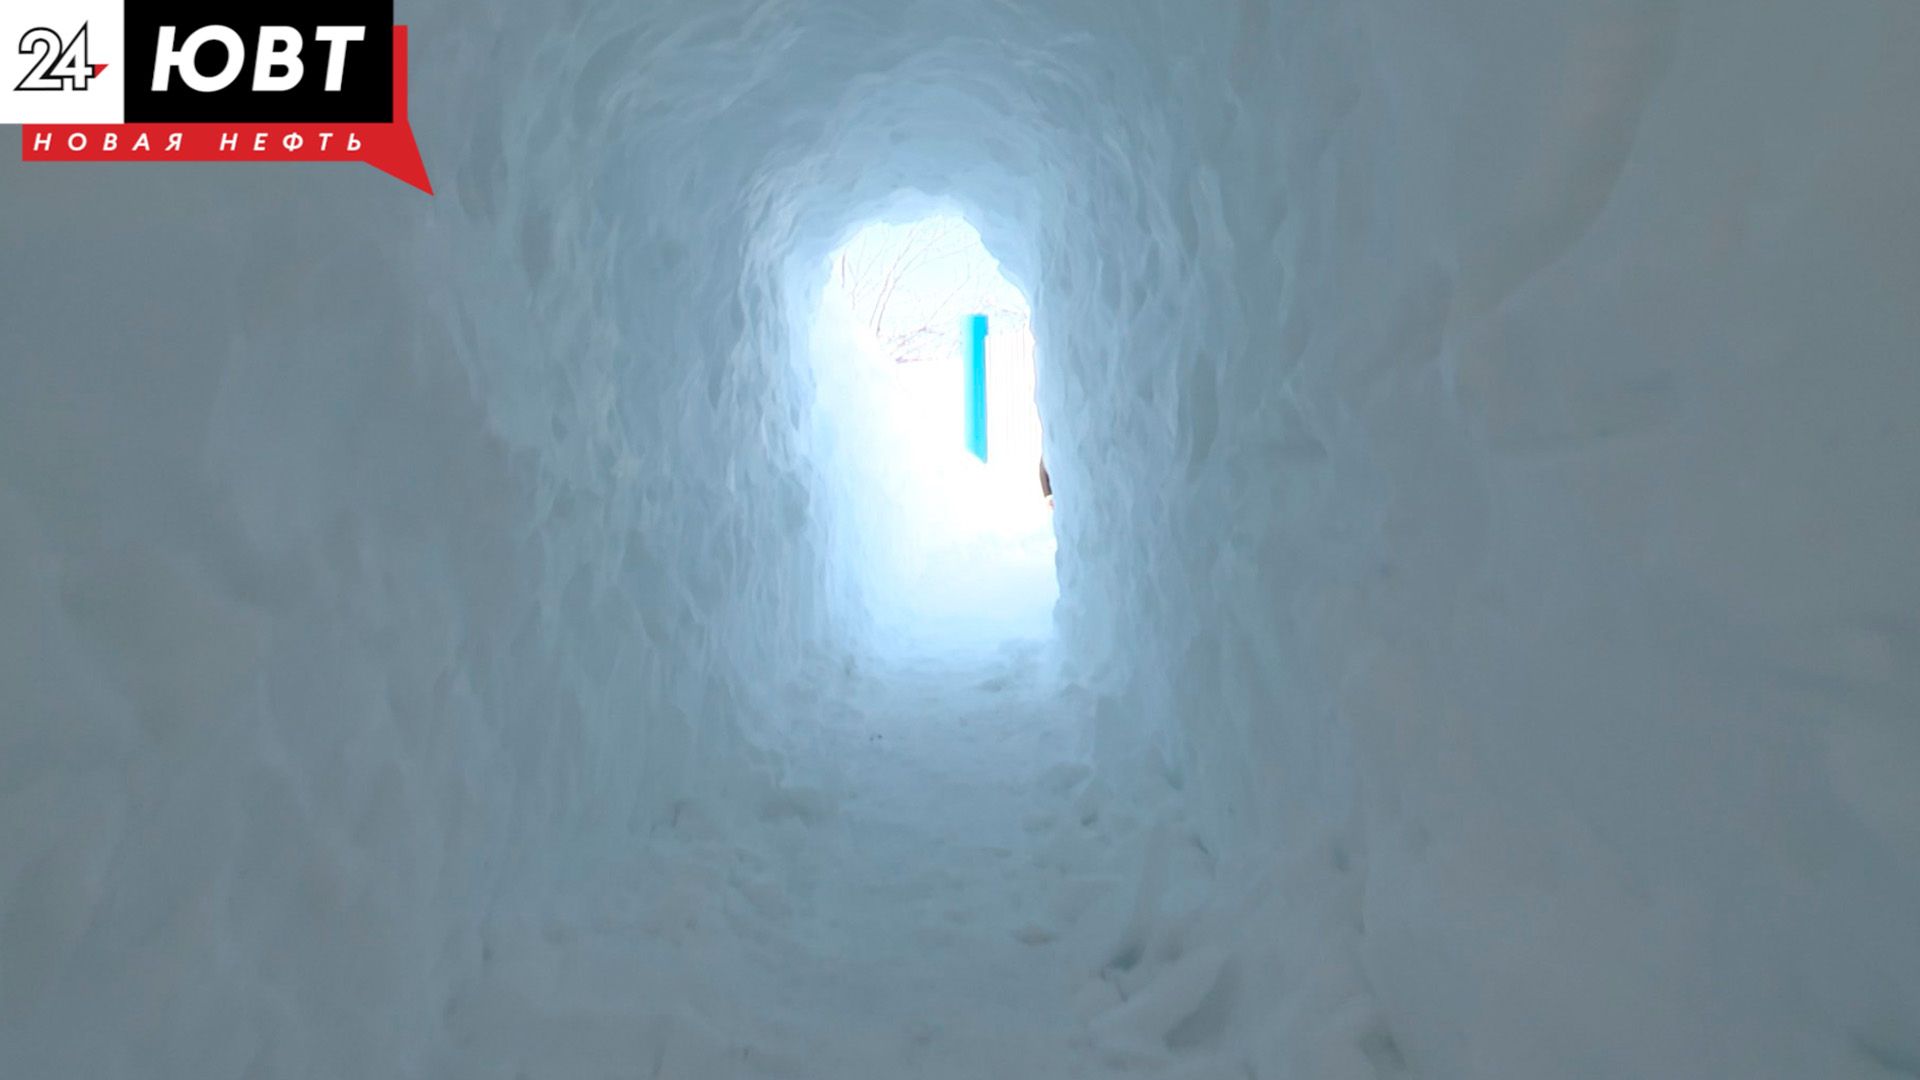 Главе СК доложат о ситуации в Альметьевском районе, в которой мужчина вырыл снежный тоннель для жены-инвалида